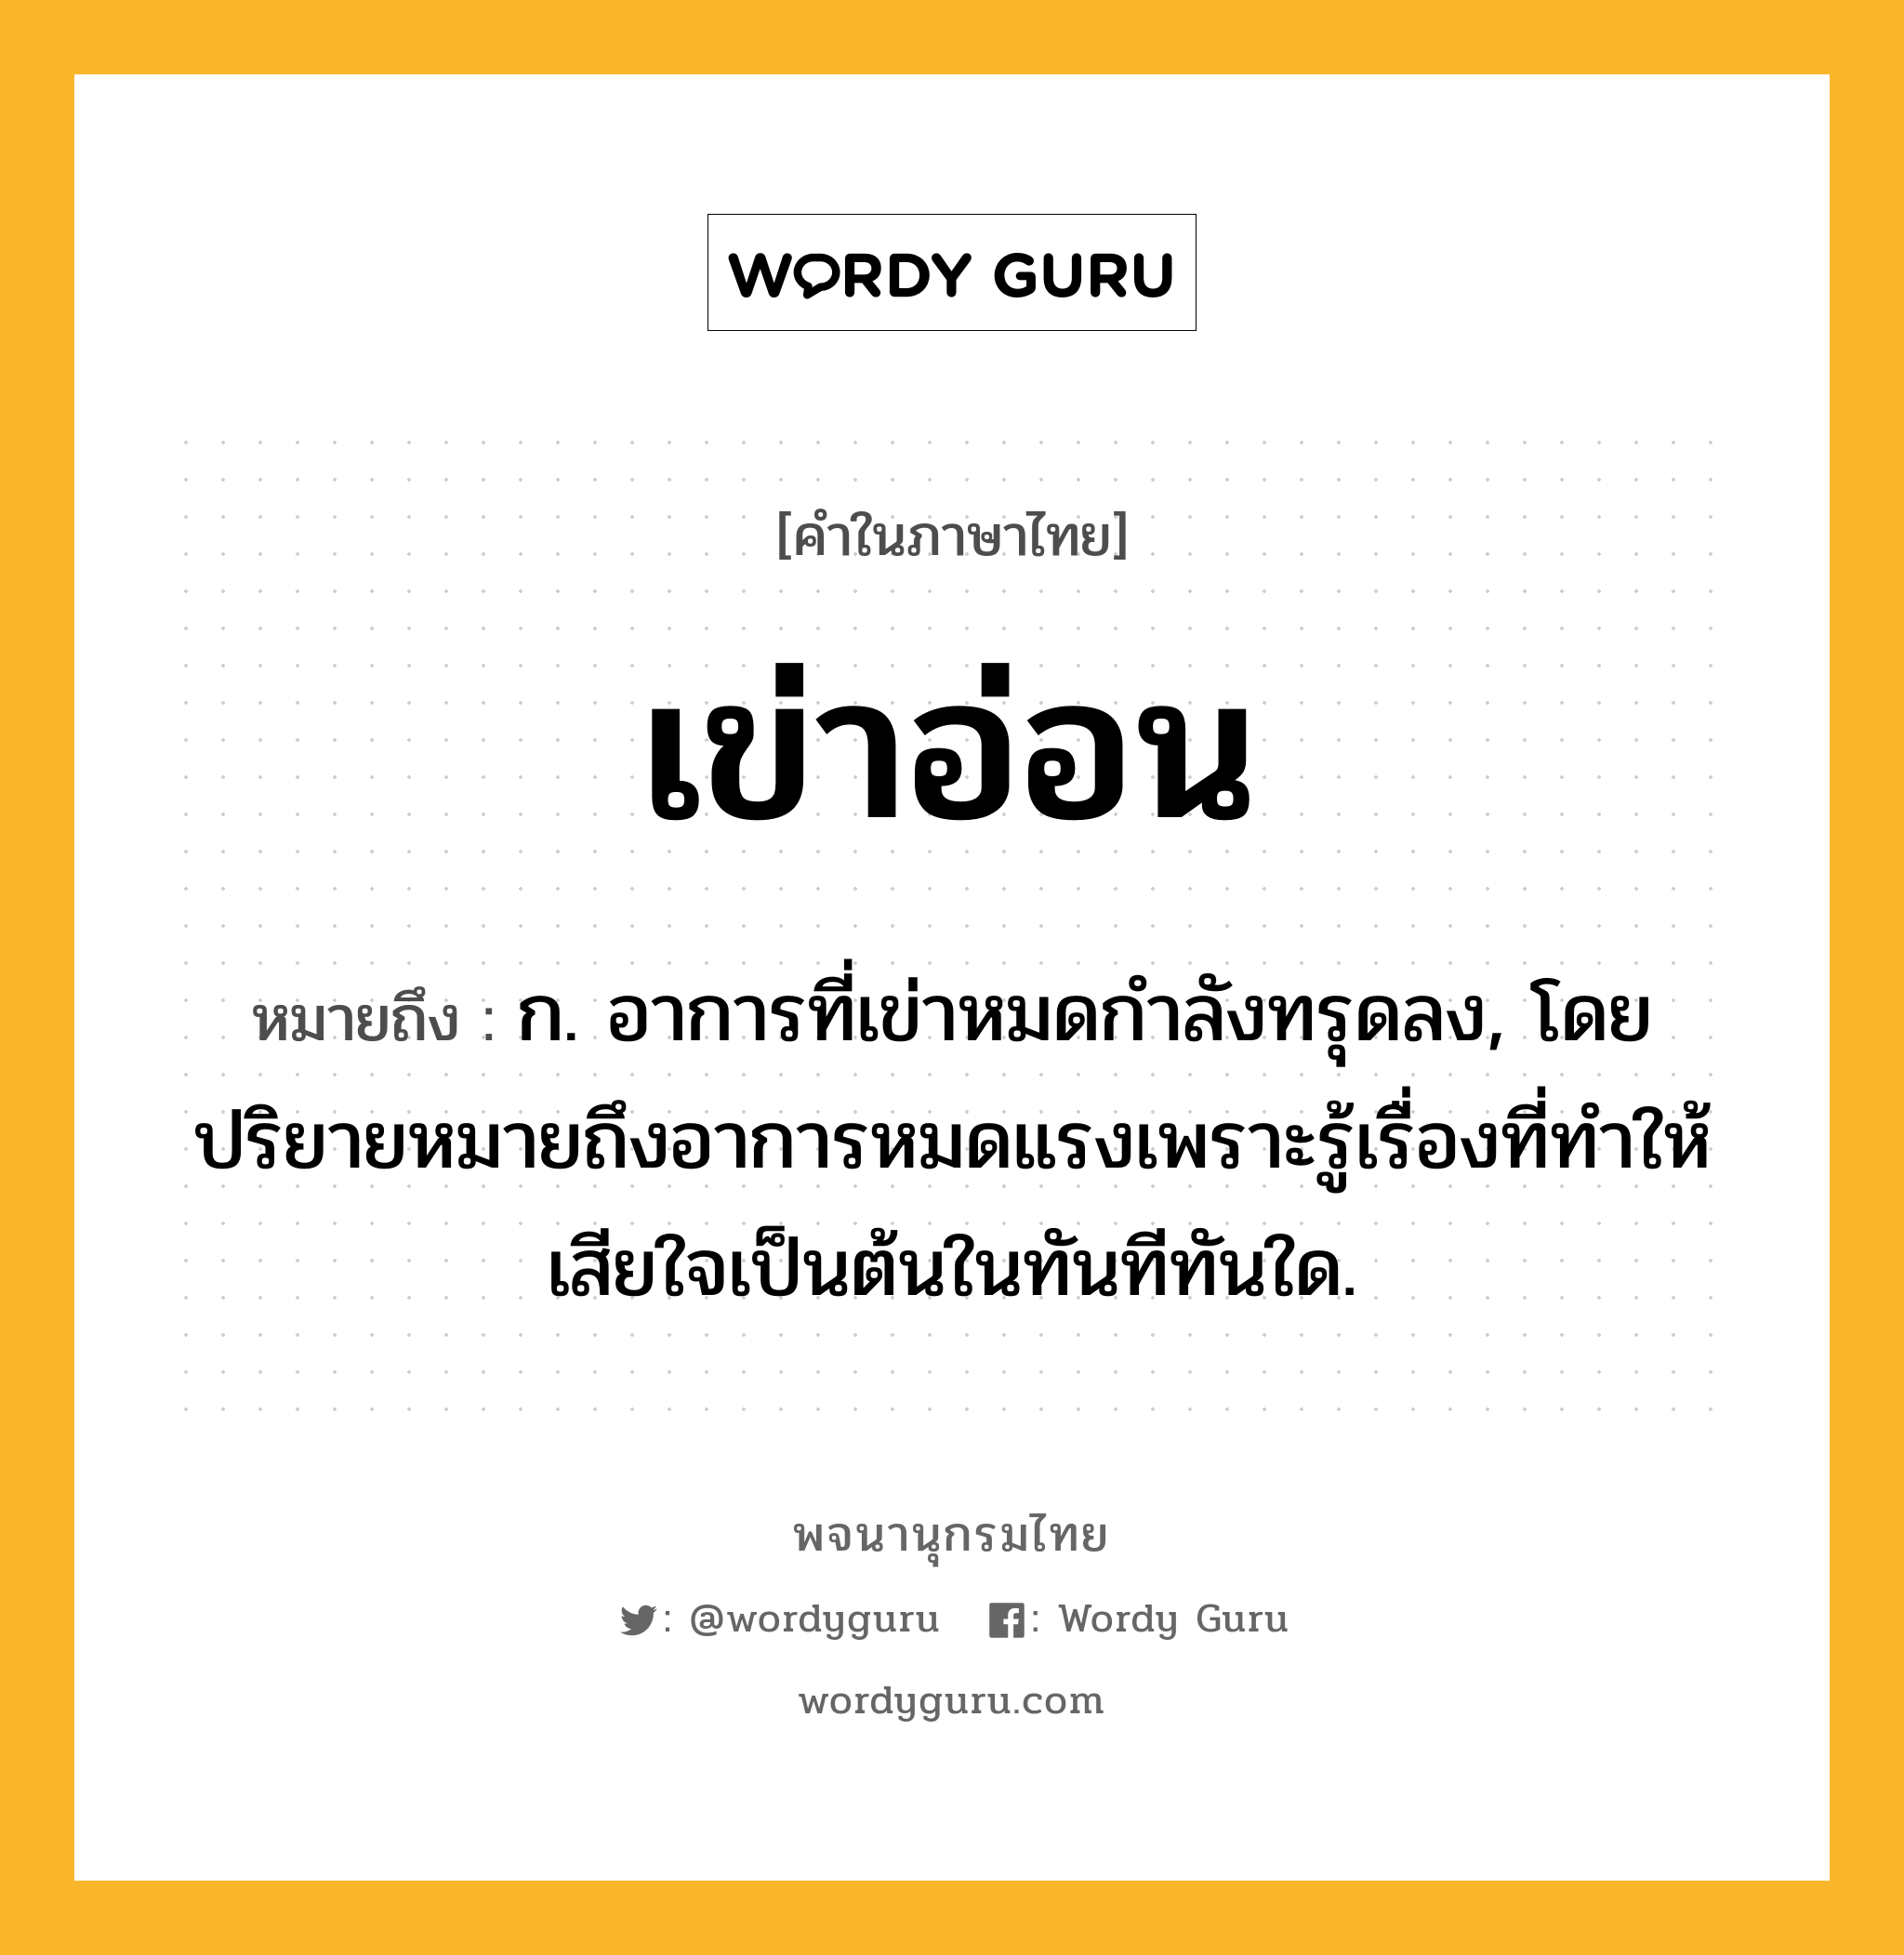 เข่าอ่อน หมายถึงอะไร?, คำในภาษาไทย เข่าอ่อน หมายถึง ก. อาการที่เข่าหมดกําลังทรุดลง, โดยปริยายหมายถึงอาการหมดแรงเพราะรู้เรื่องที่ทำให้เสียใจเป็นต้นในทันทีทันใด.